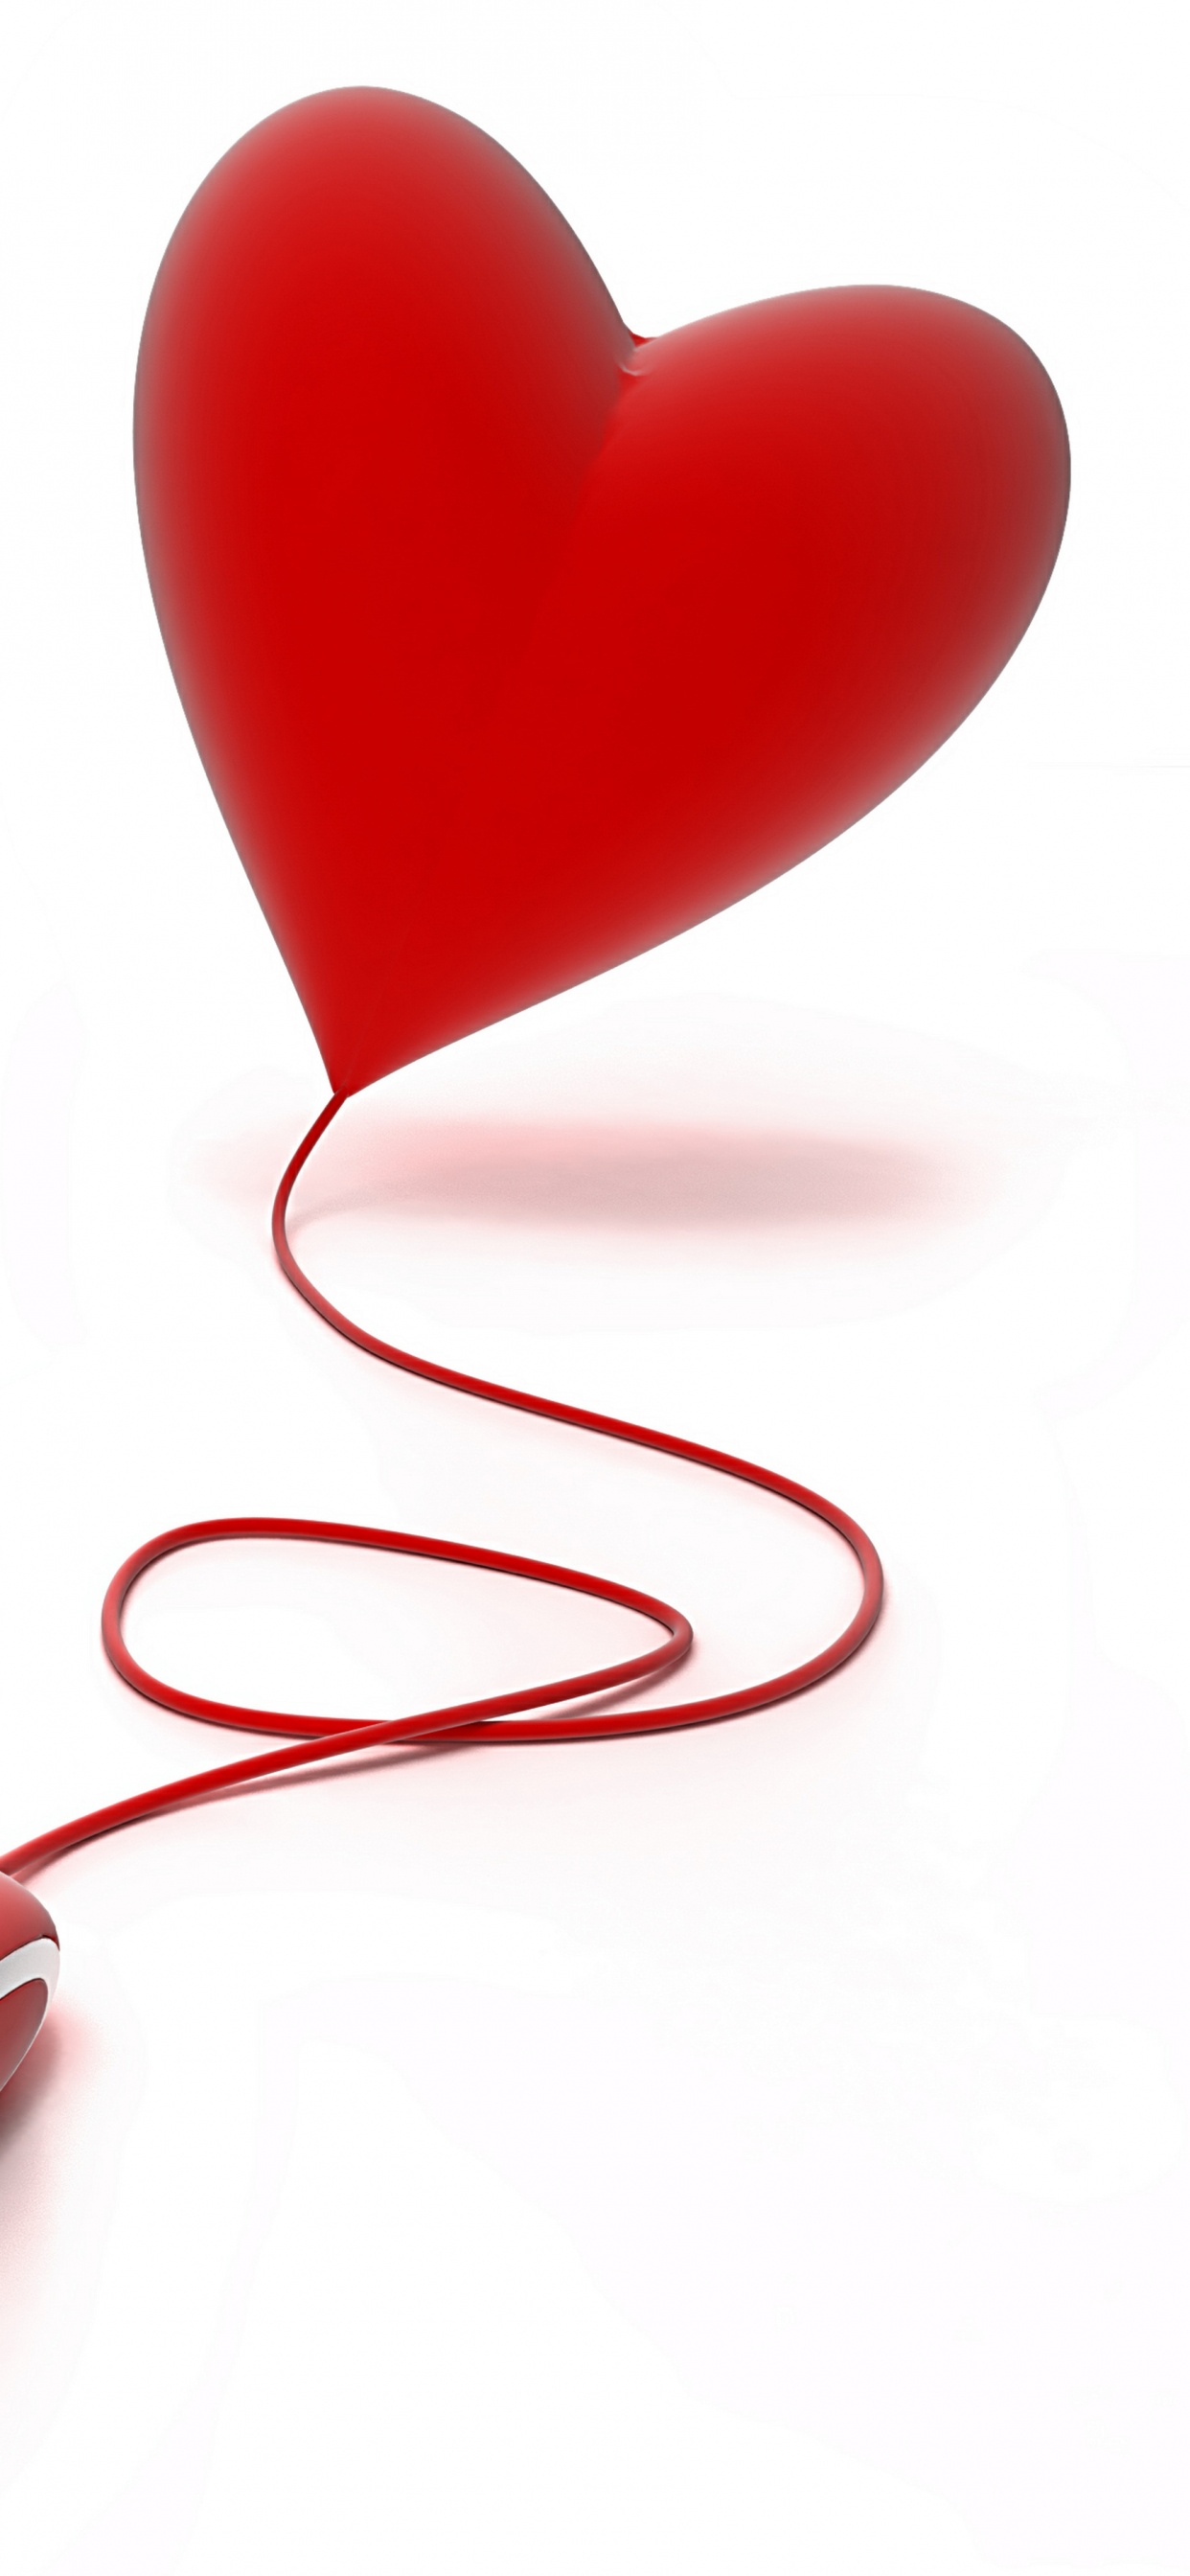 心脏, 红色的, 爱情, 情书, 符号 壁纸 1242x2688 允许